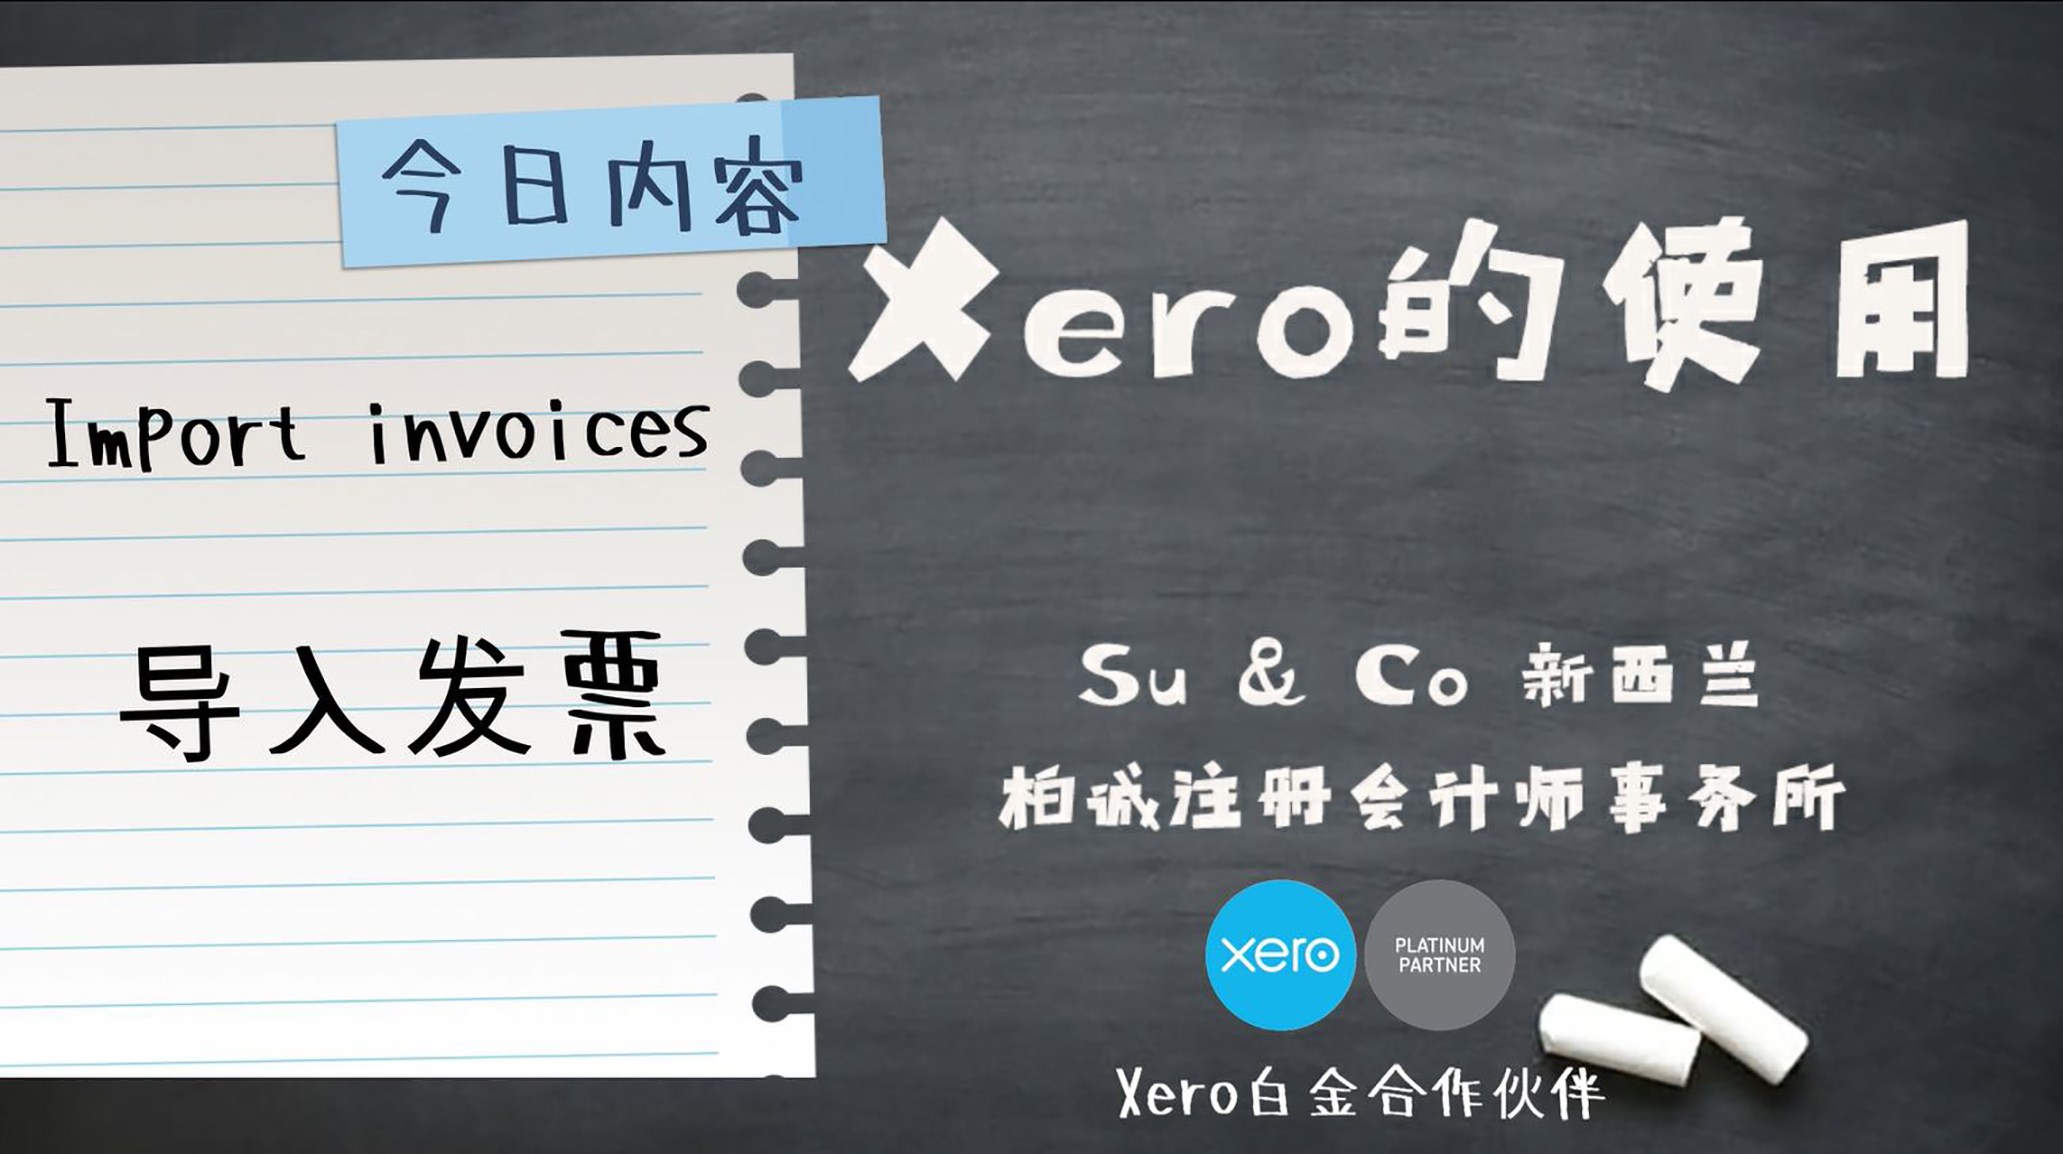 Xero的使用教程 - Import invoices 导入发票